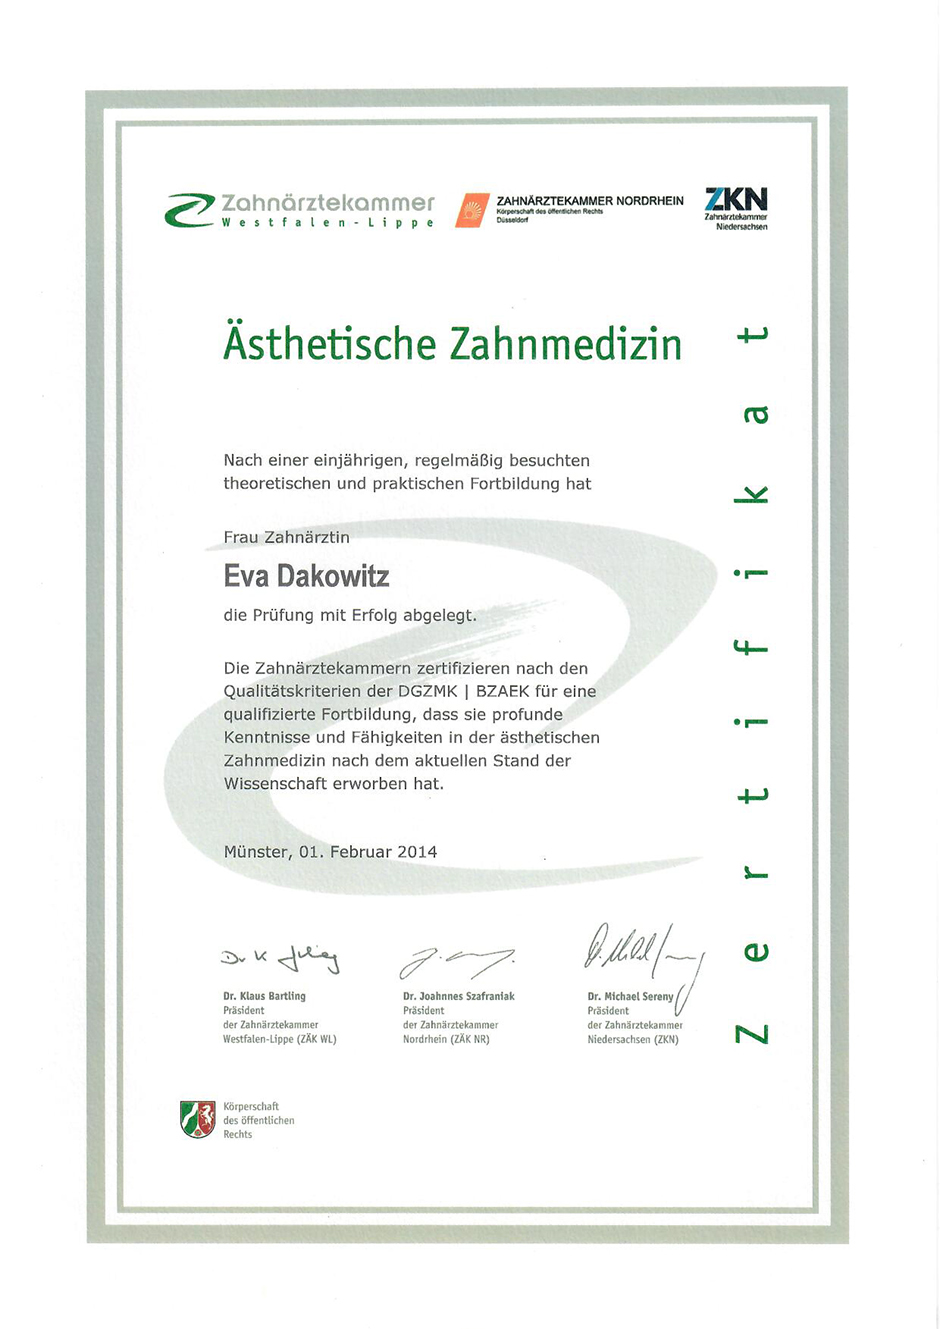 Zertifikat-Dokument der Zahnärztekammer Westfalen-Lippe für Ästhetische Zahnmedizin ausgestellt für Frau Zahnärztin Eva Dakowitz am 1. Februar 2014